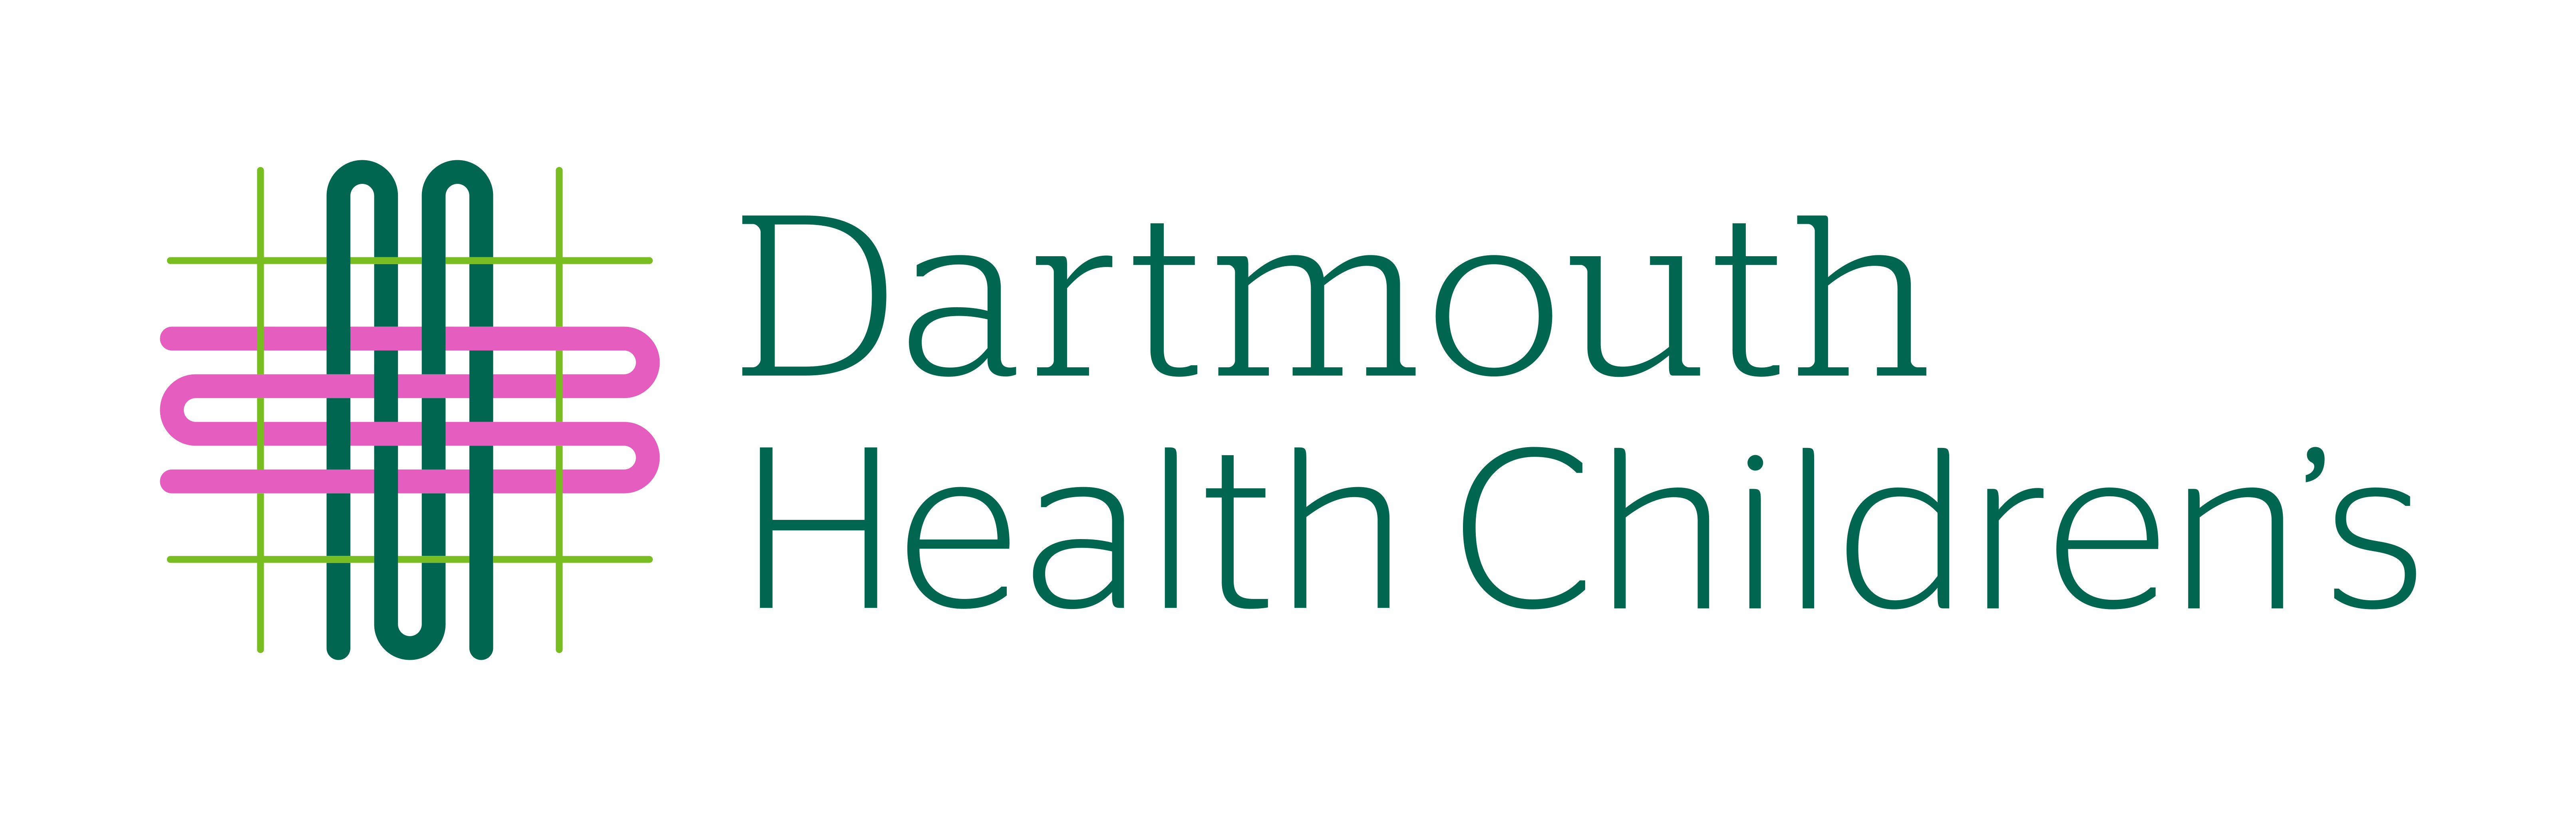 Dartmouth Health Children's